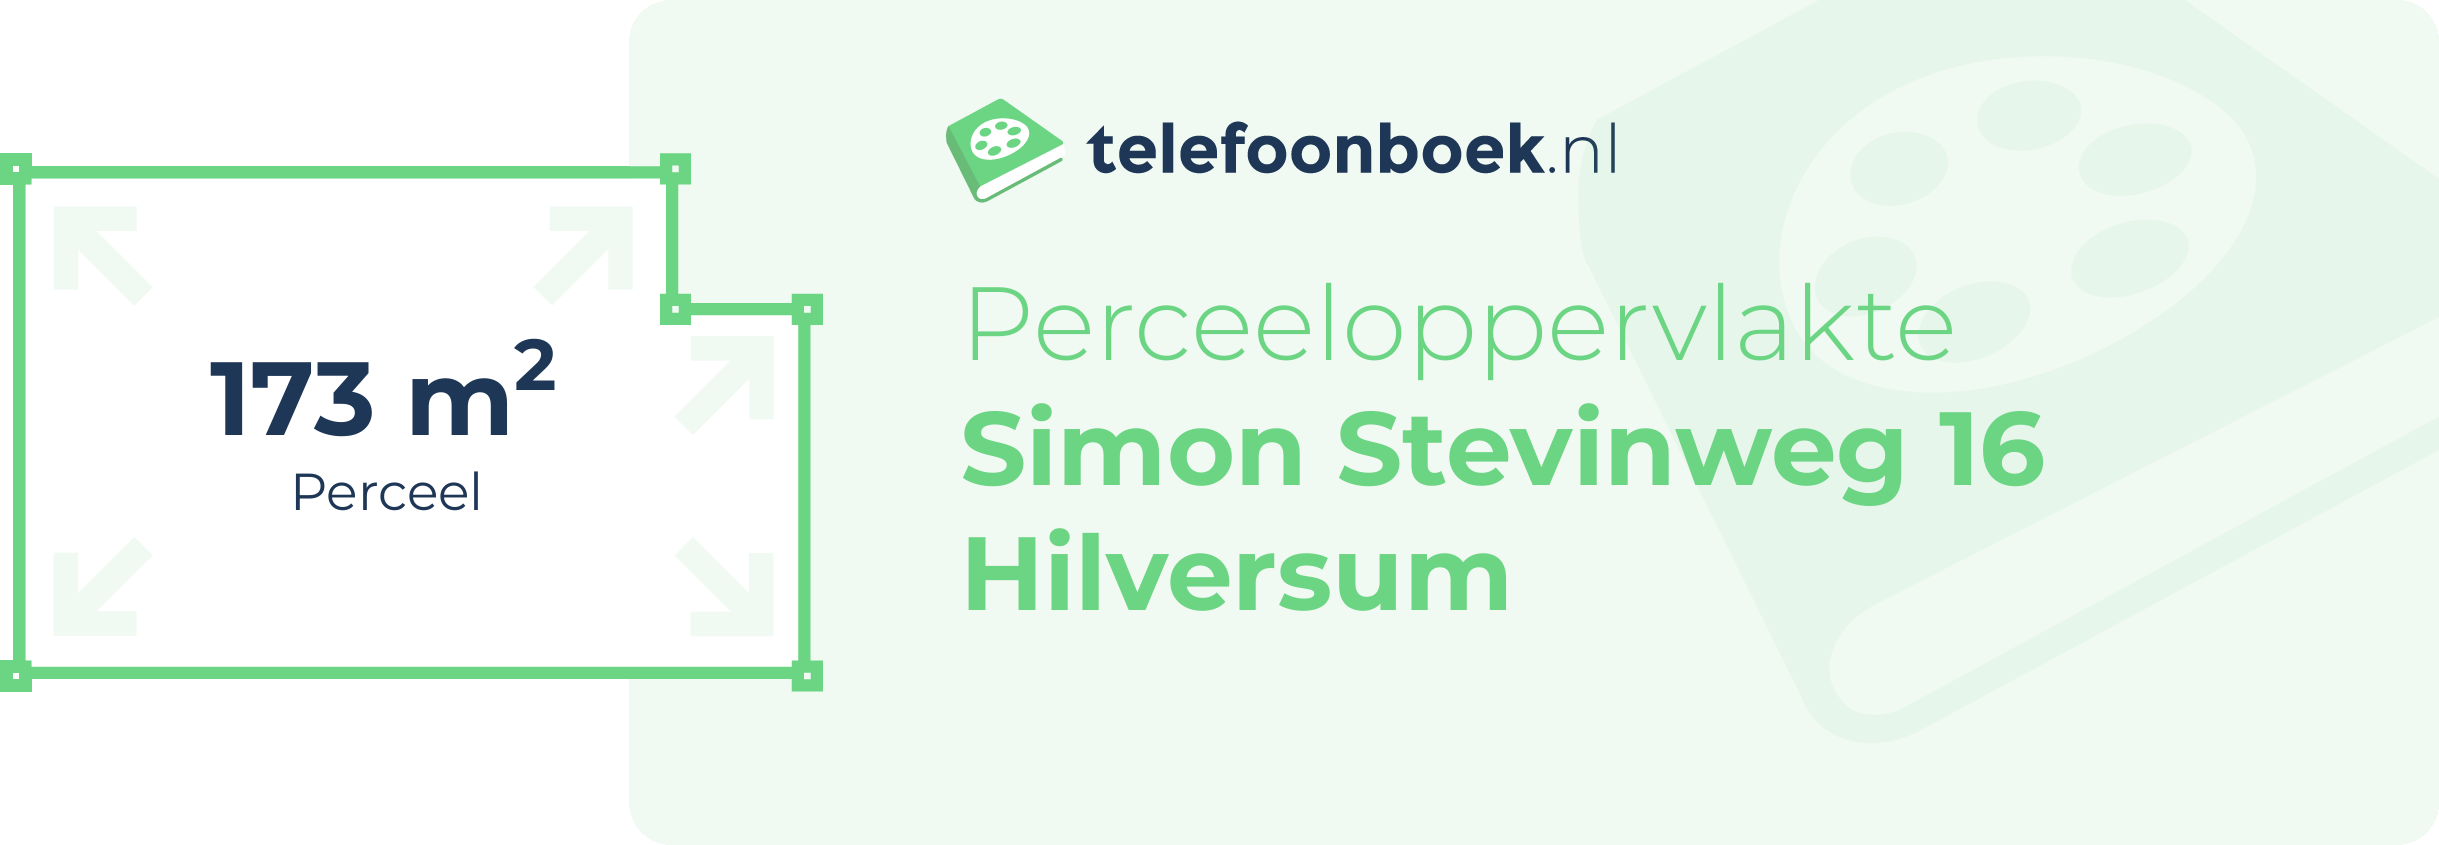 Perceeloppervlakte Simon Stevinweg 16 Hilversum